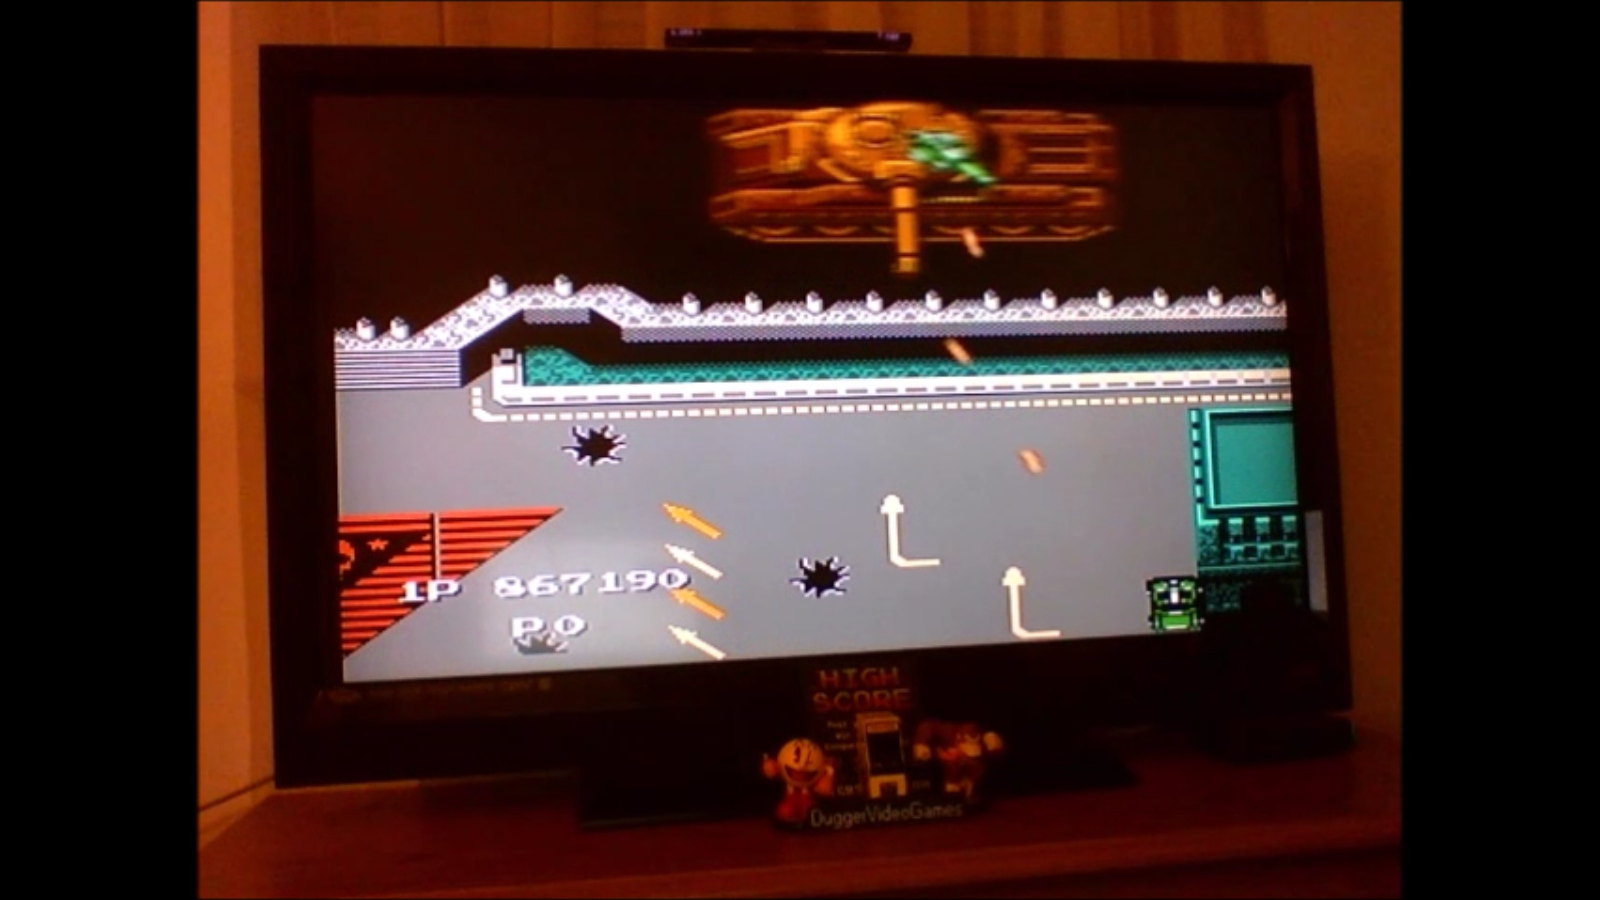 DuggerVideoGames: Jackal (NES/Famicom Emulated) 867,190 points on 2017-03-02 02:58:01